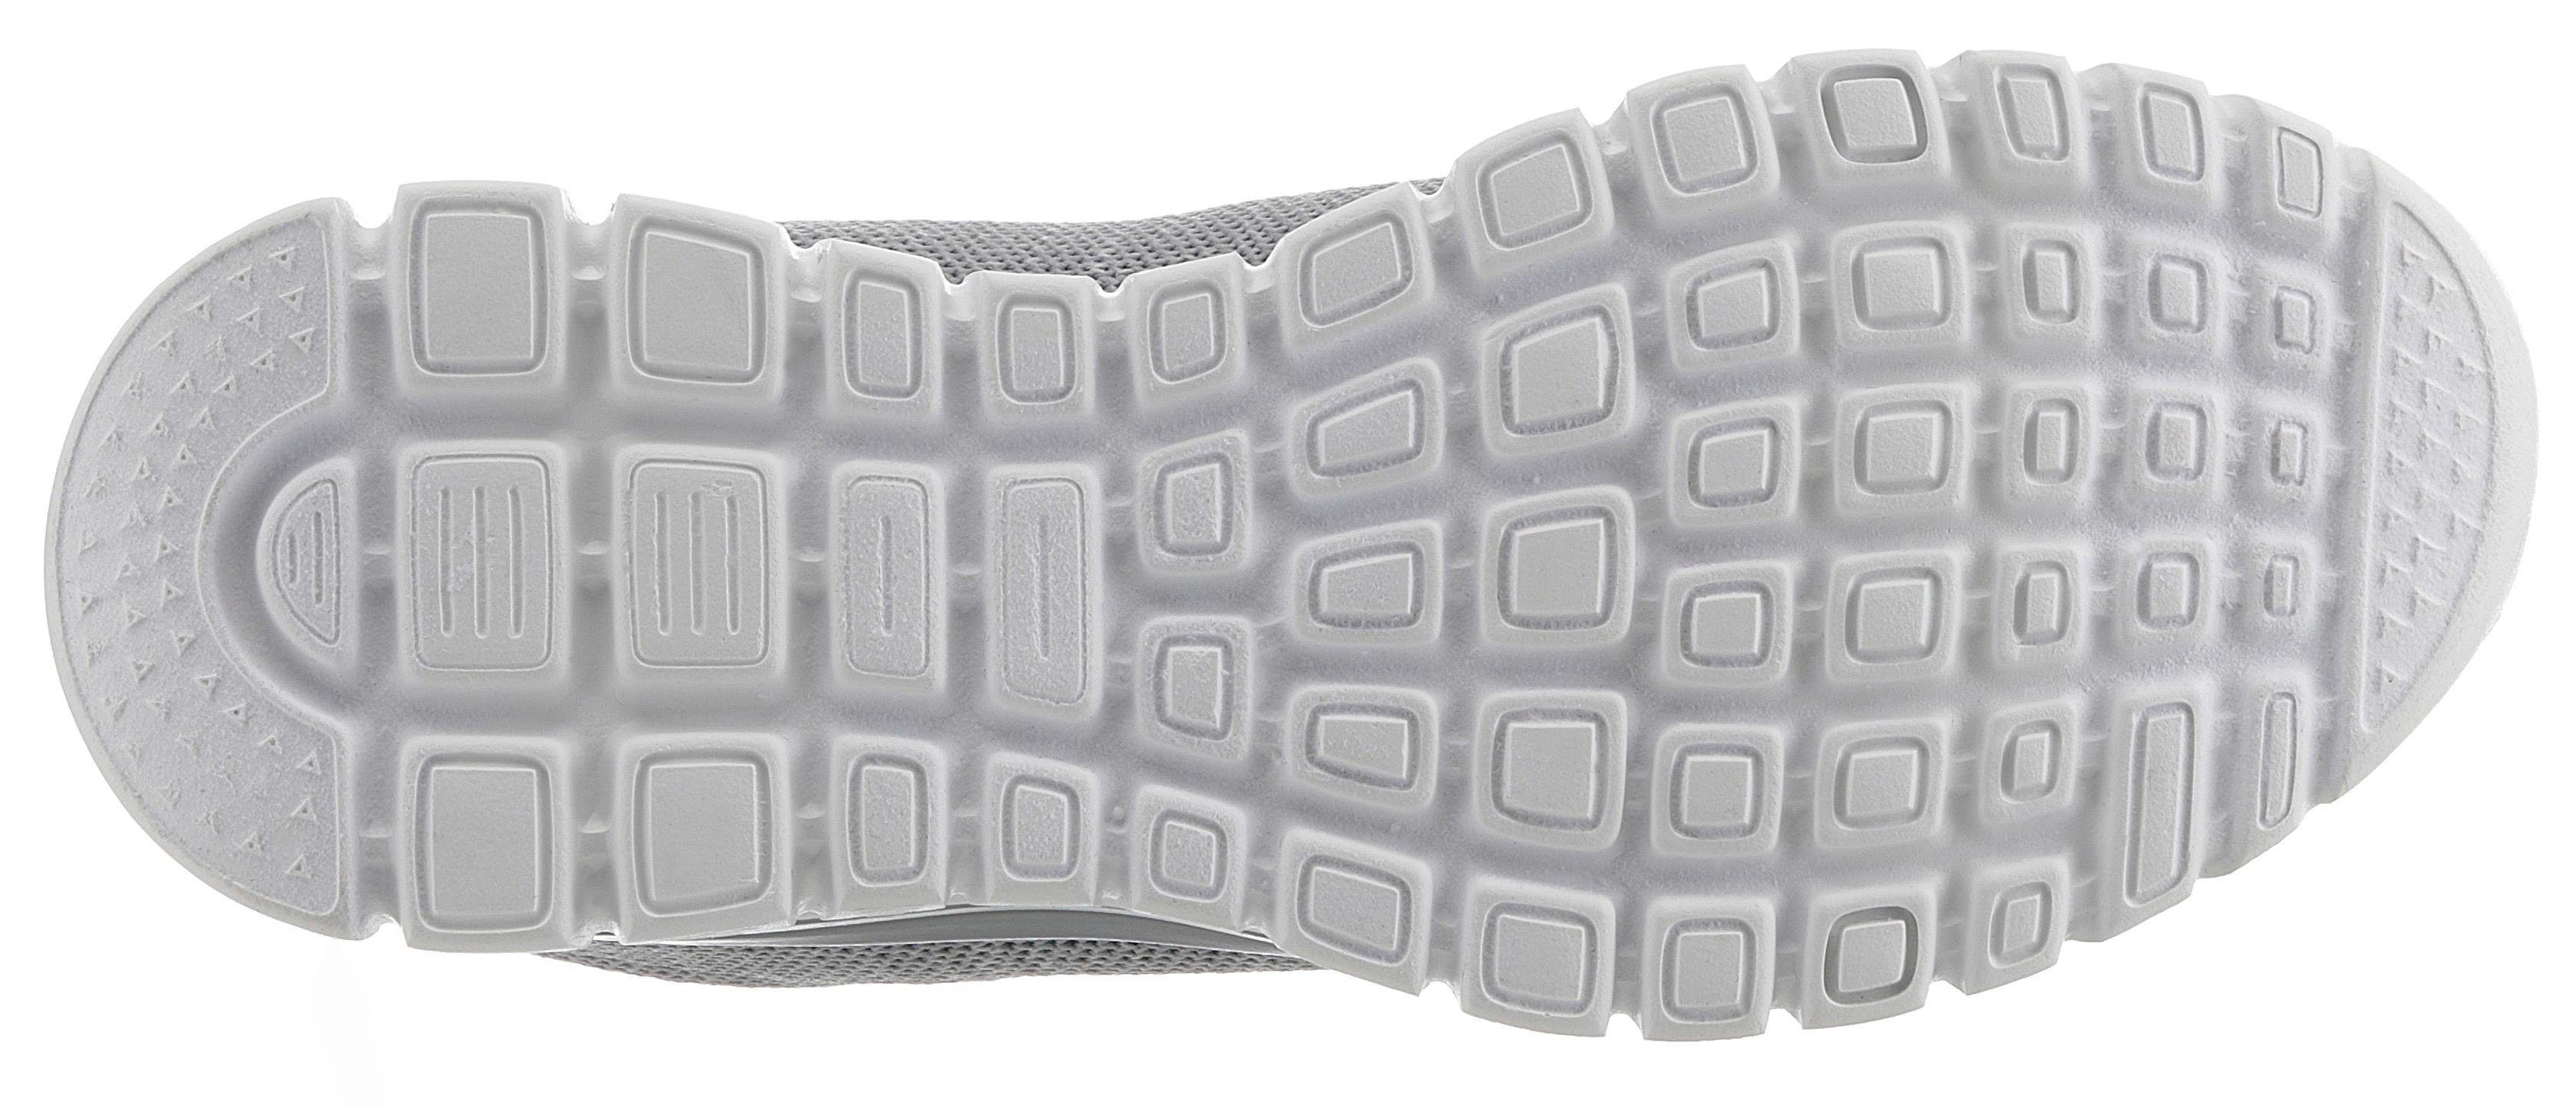 Graceful Sneaker Memory Foam Fortune Skechers - grau-mint Twisted mit